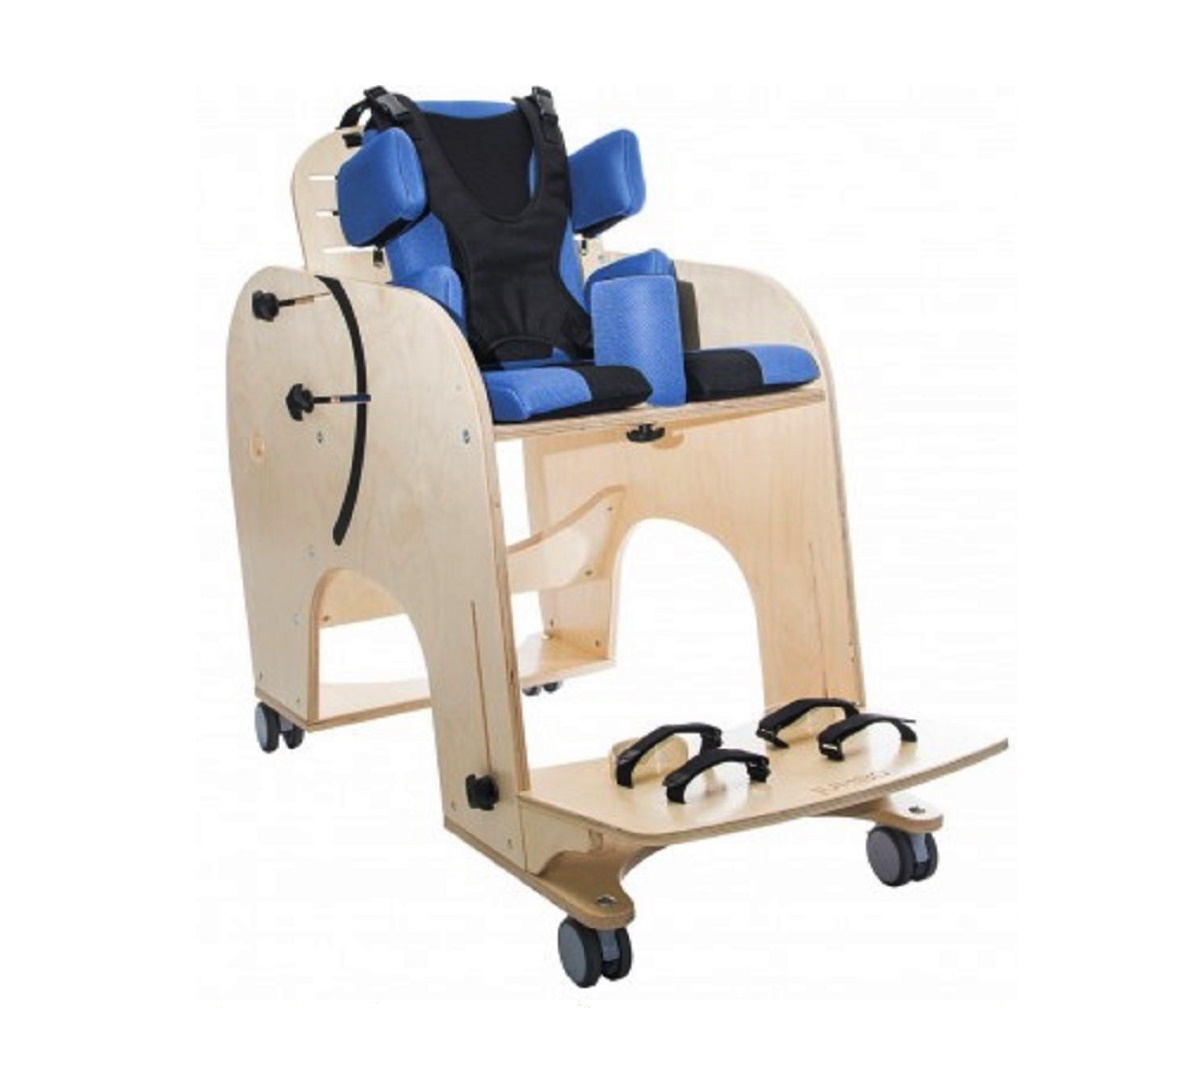 AKCES - MED | JUMBO™ Rehabilitasyon Koltuğu (ÖN SİPARİŞ ZORUNLUDUR) | Akülü Tekerlekli Sandalye | Tekerlekli Sandalye